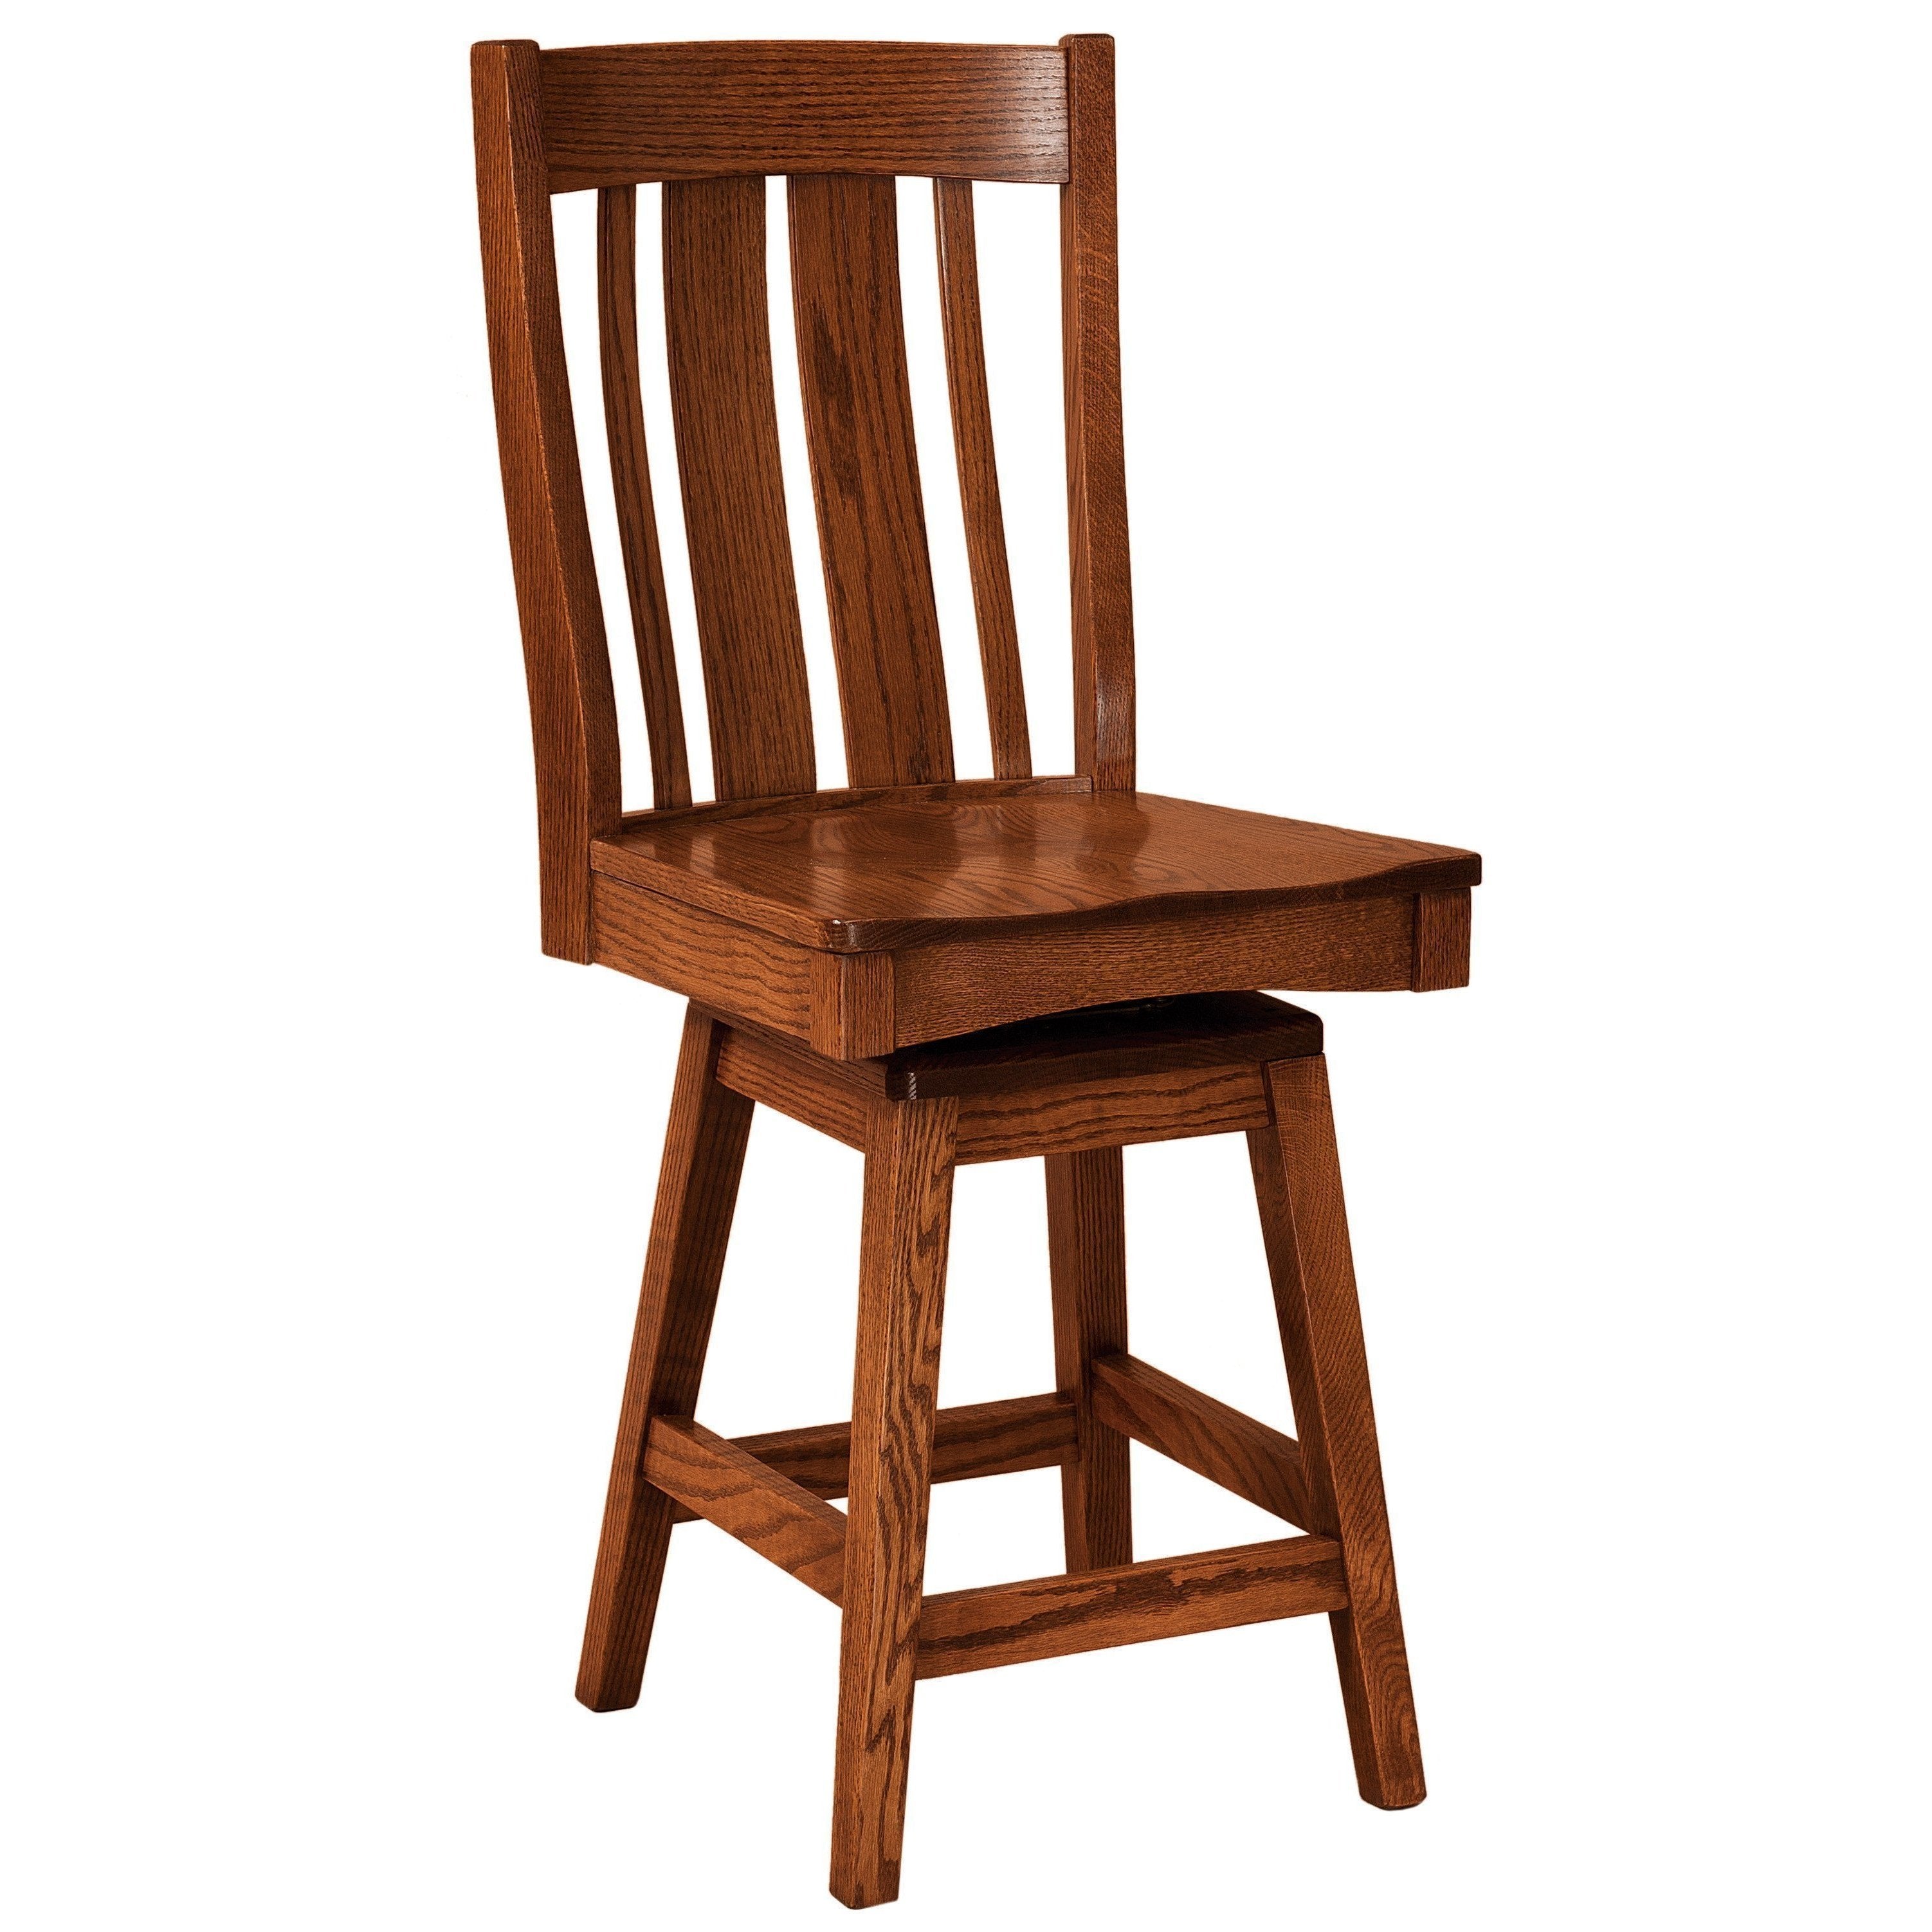 breckenridge-swivel-bar-chair-260059.jpg